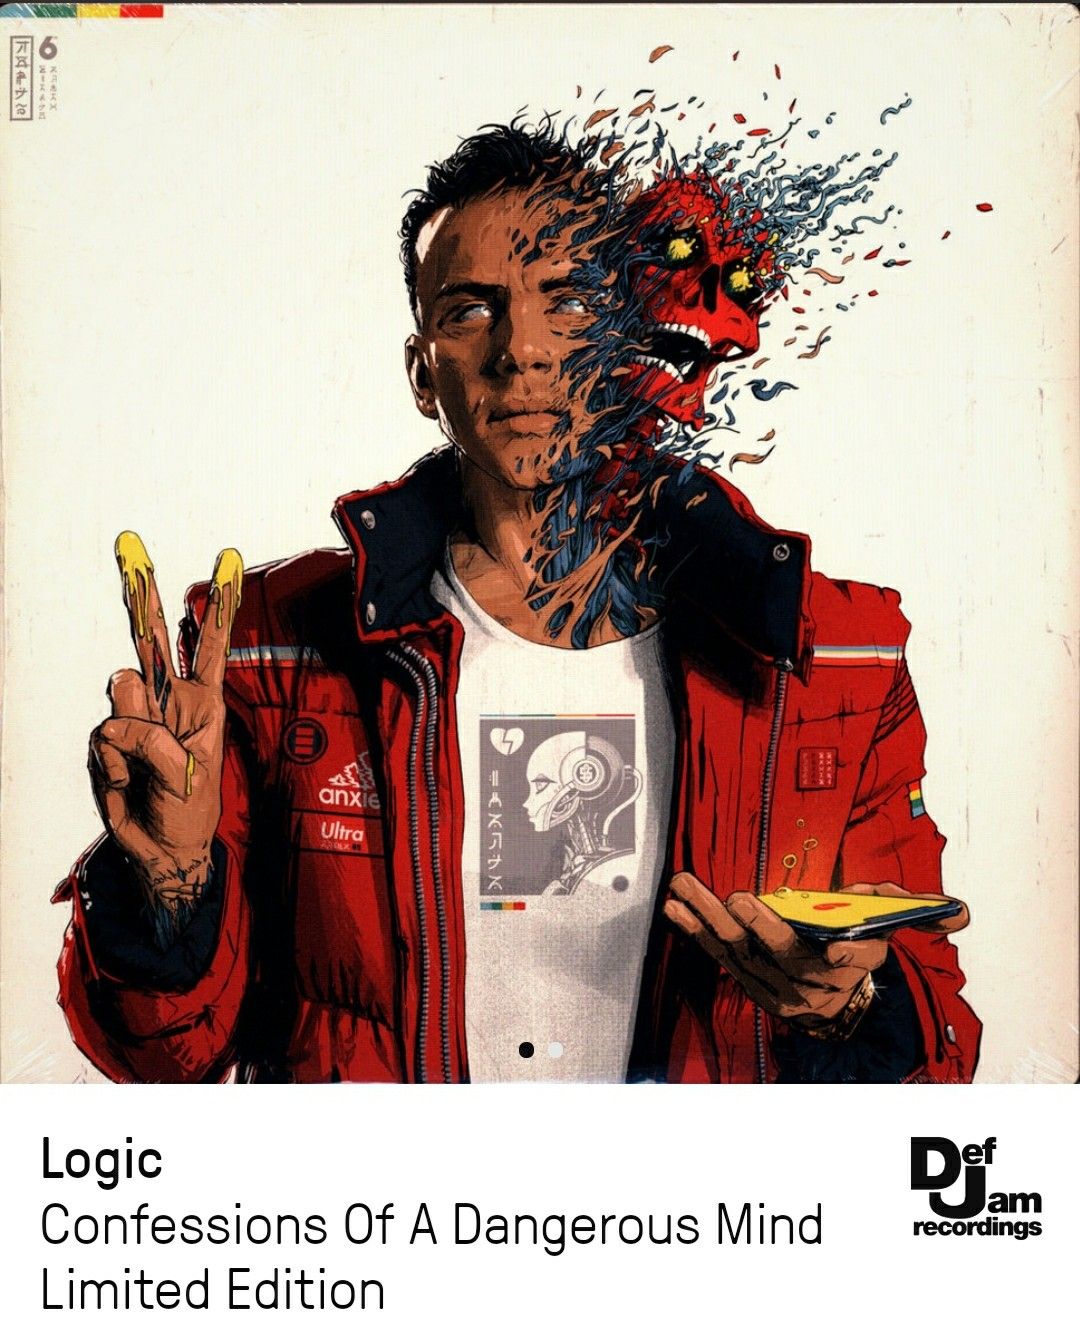 Logic-Confessions of a dangerous mind vinyl